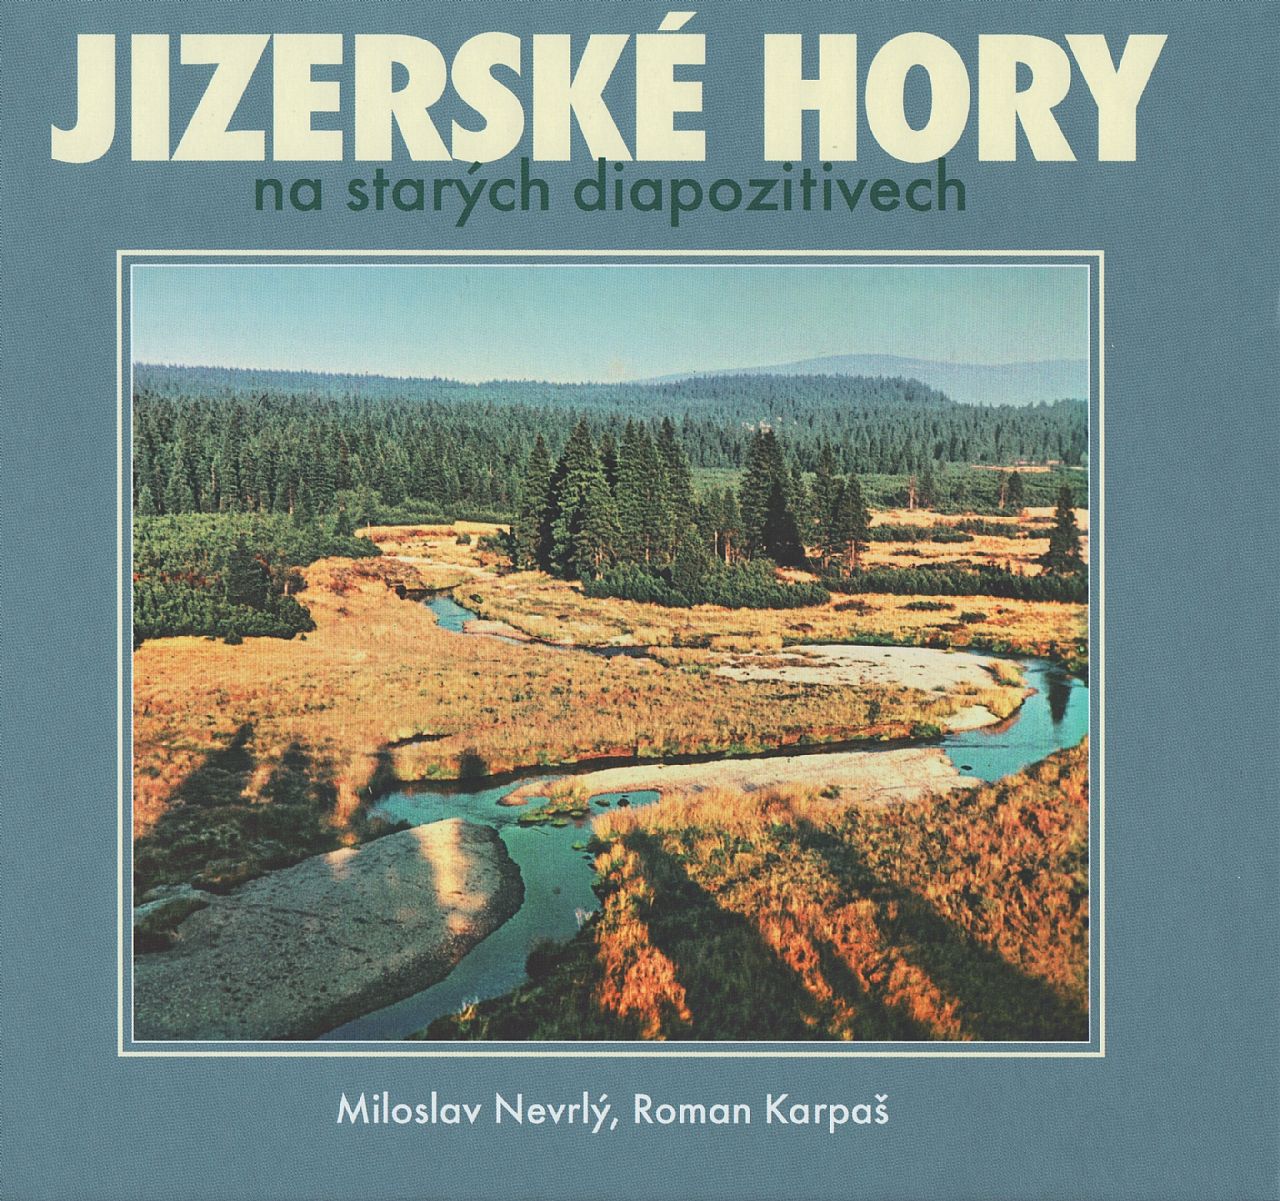 Jizerské hory na starých diapozitivech (Miloslav Nevrlý, Roman Karpaš)